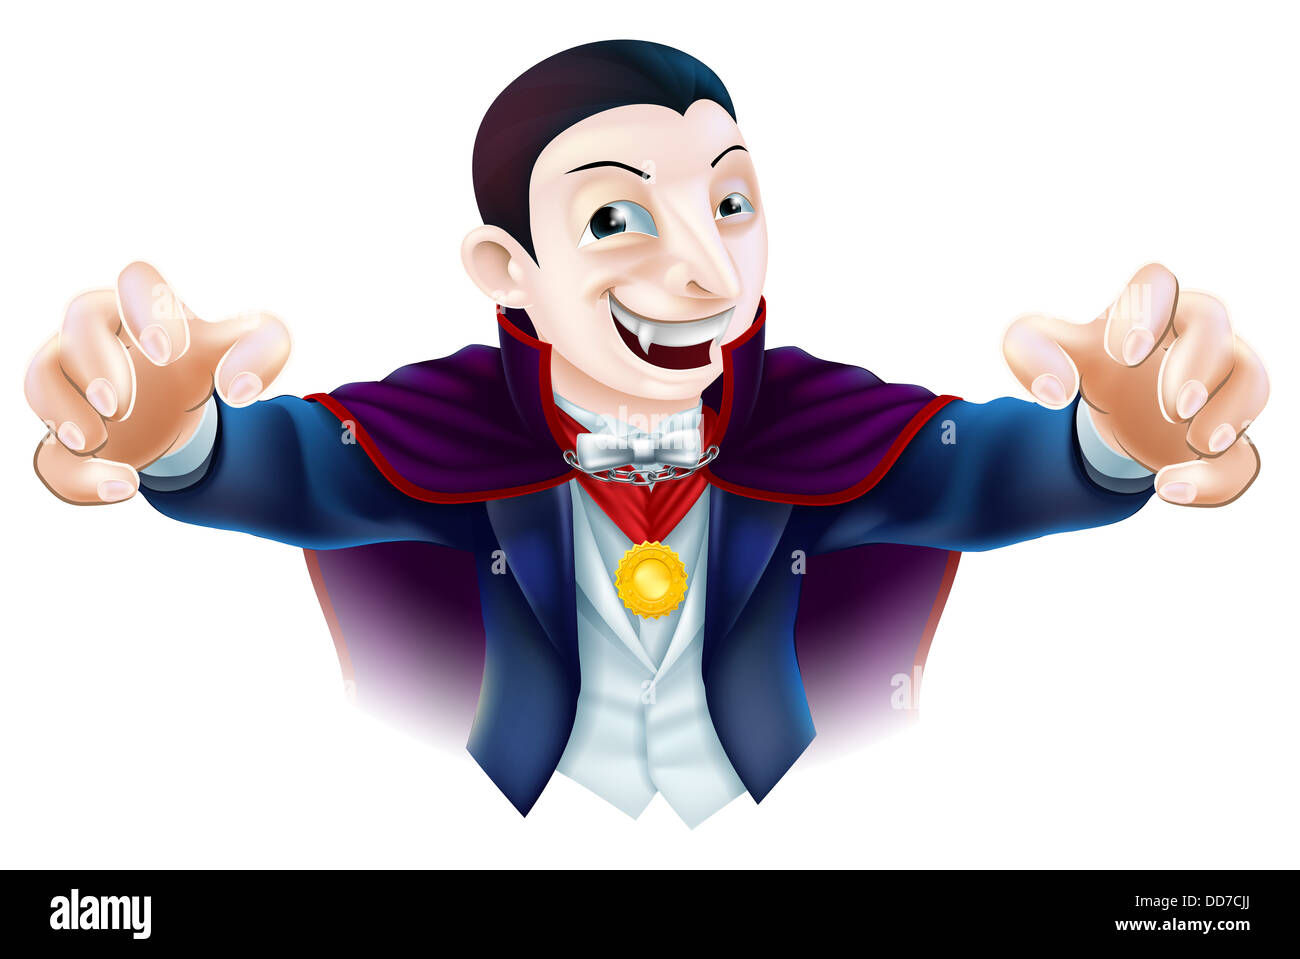 Une illustration d'un cute cartoon personnage vampire Dracula pour l'Halloween Banque D'Images